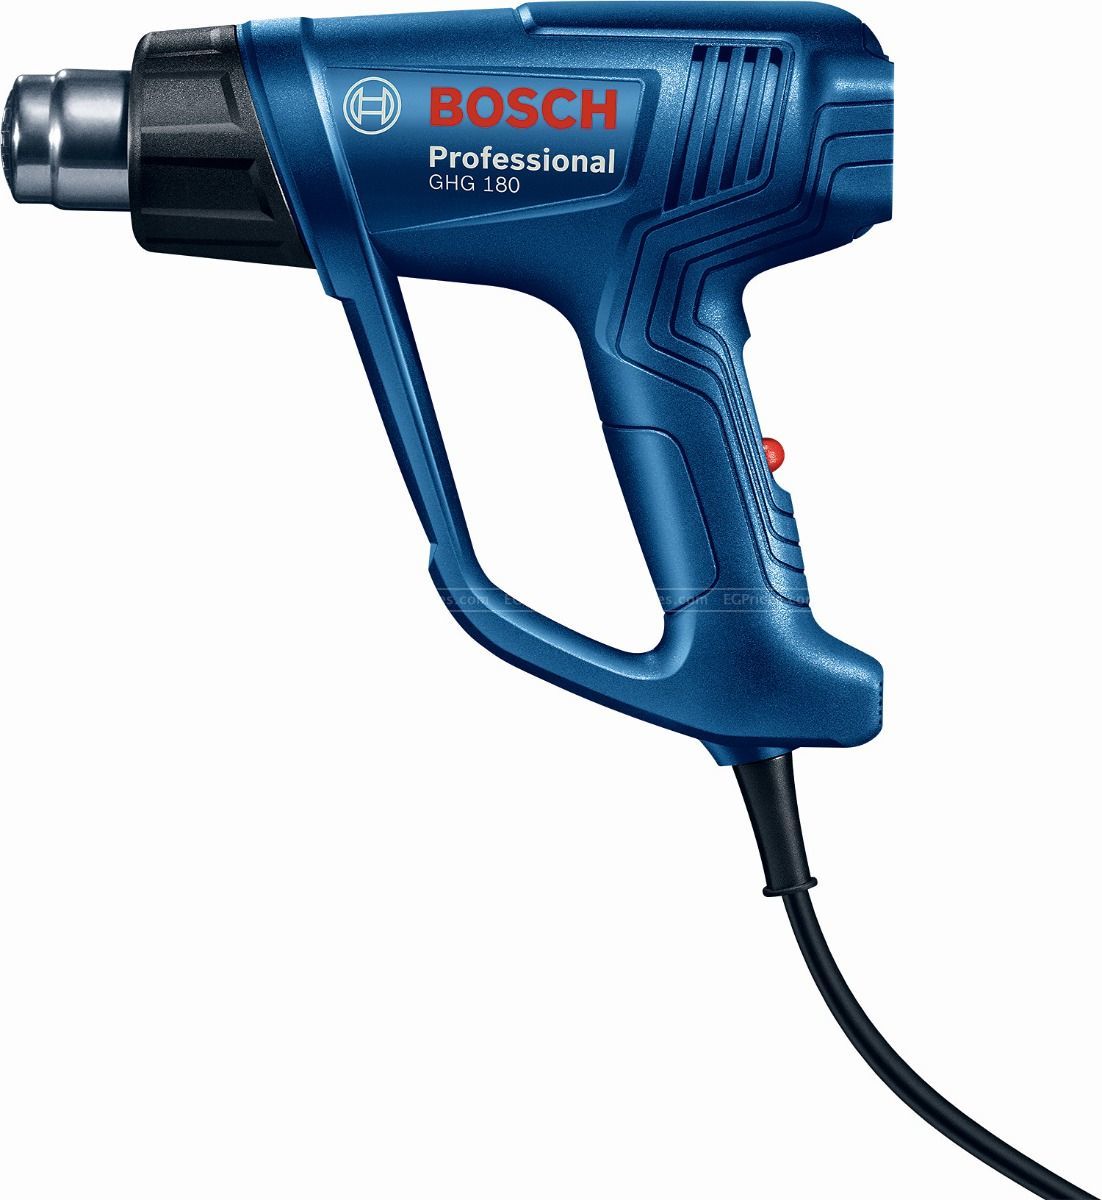 Bosch GHG 180 1800 Watt Professional Heat Gun price in Egypt | EGPrices